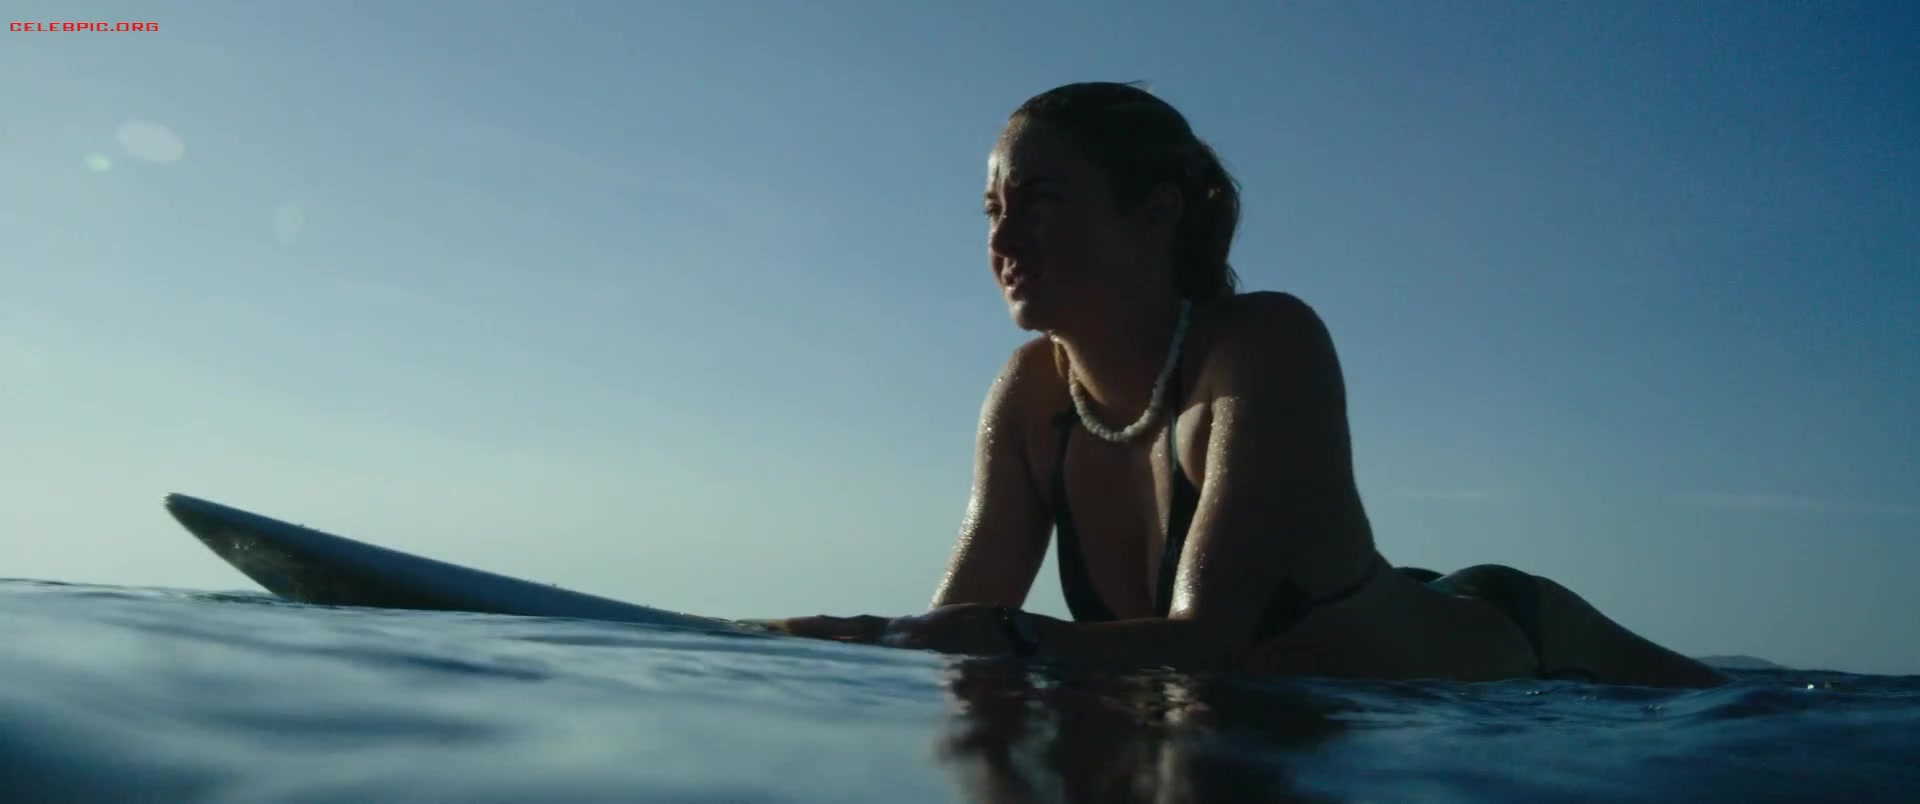 Shailene Woodley - Adrift 1080p (1) 0206.jpg